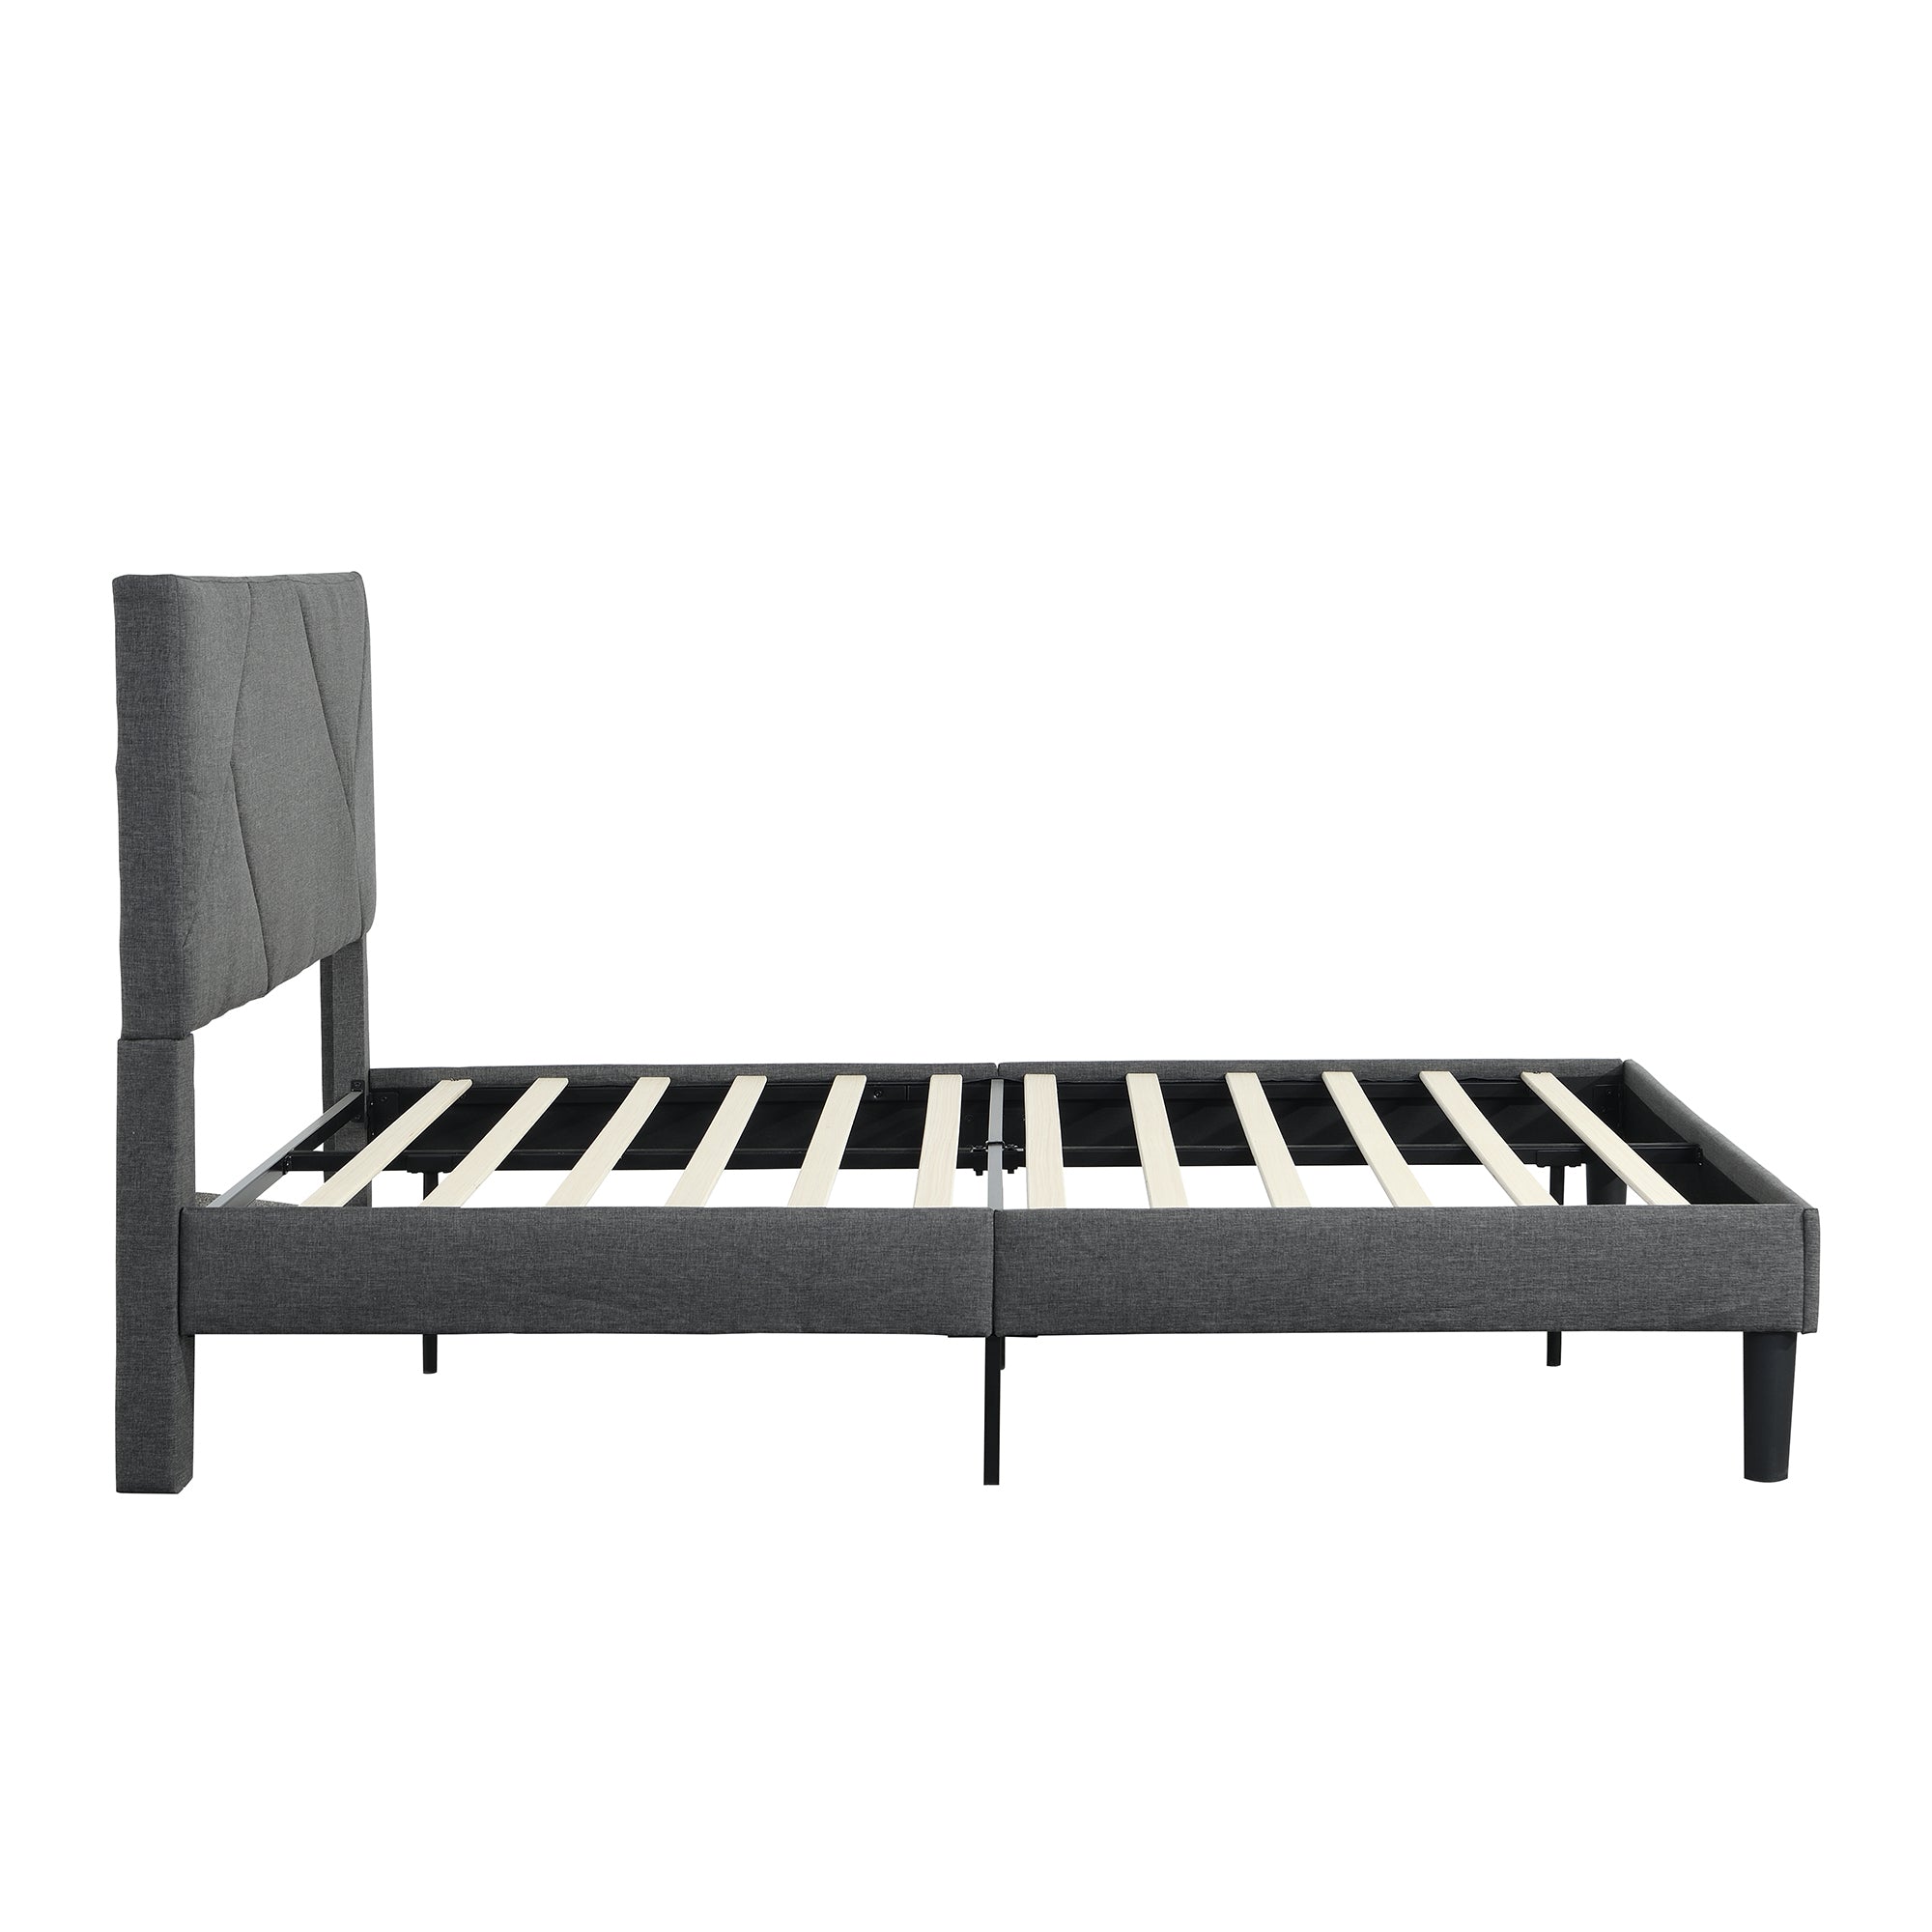 Queen Size Upholstered Platform Bed Frame ,Wood Slat grey-linen